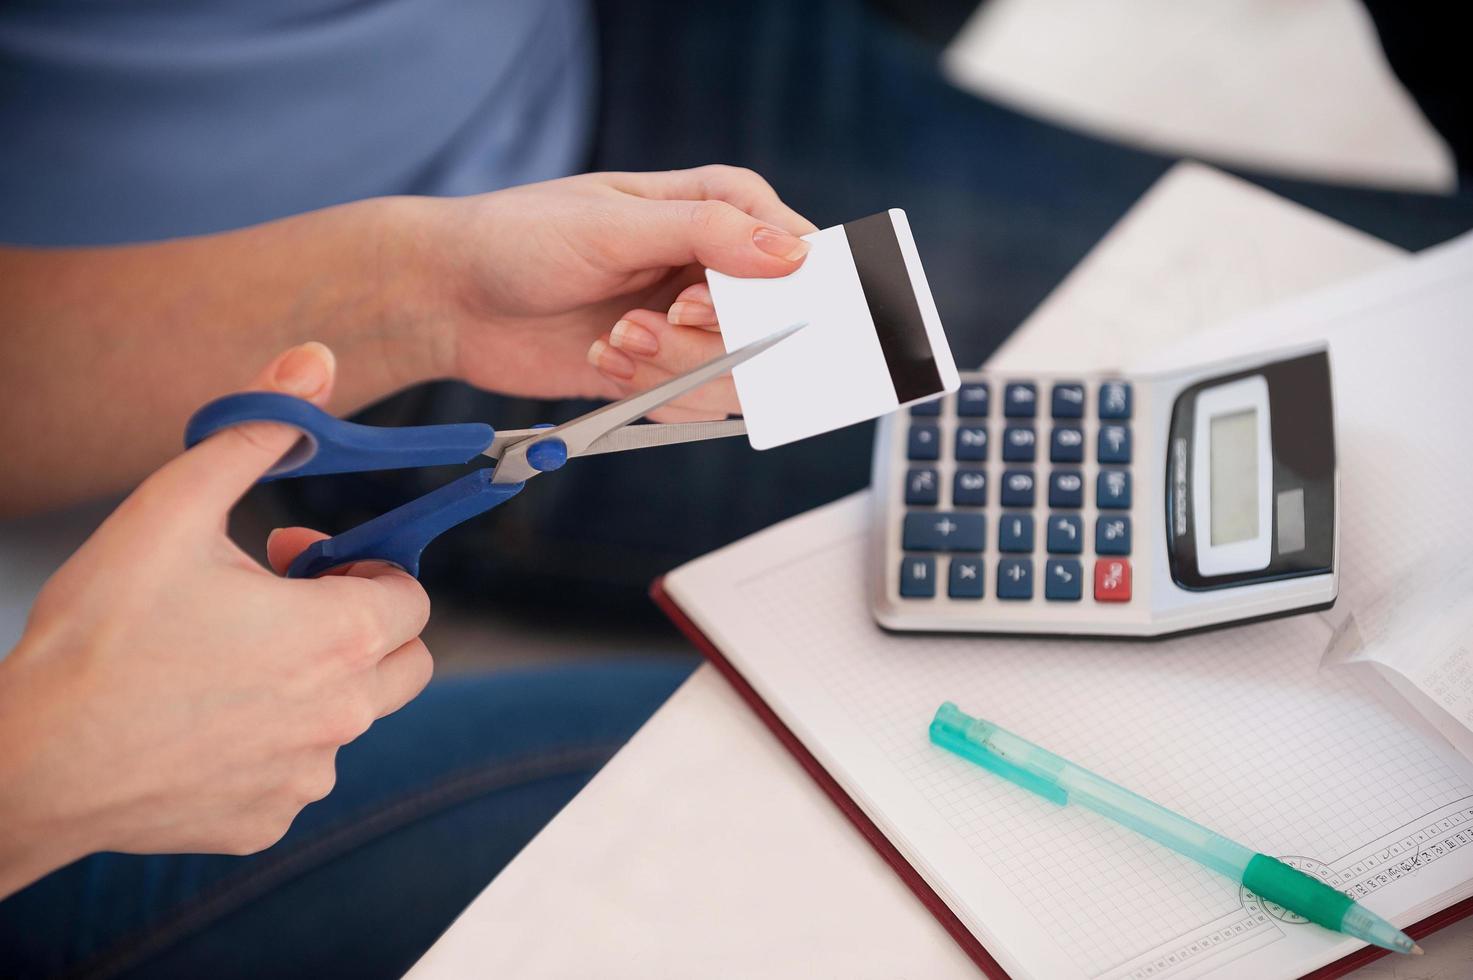 recortando los gastos. imagen recortada de una mujer cortando una tarjeta de crédito con unas tijeras foto